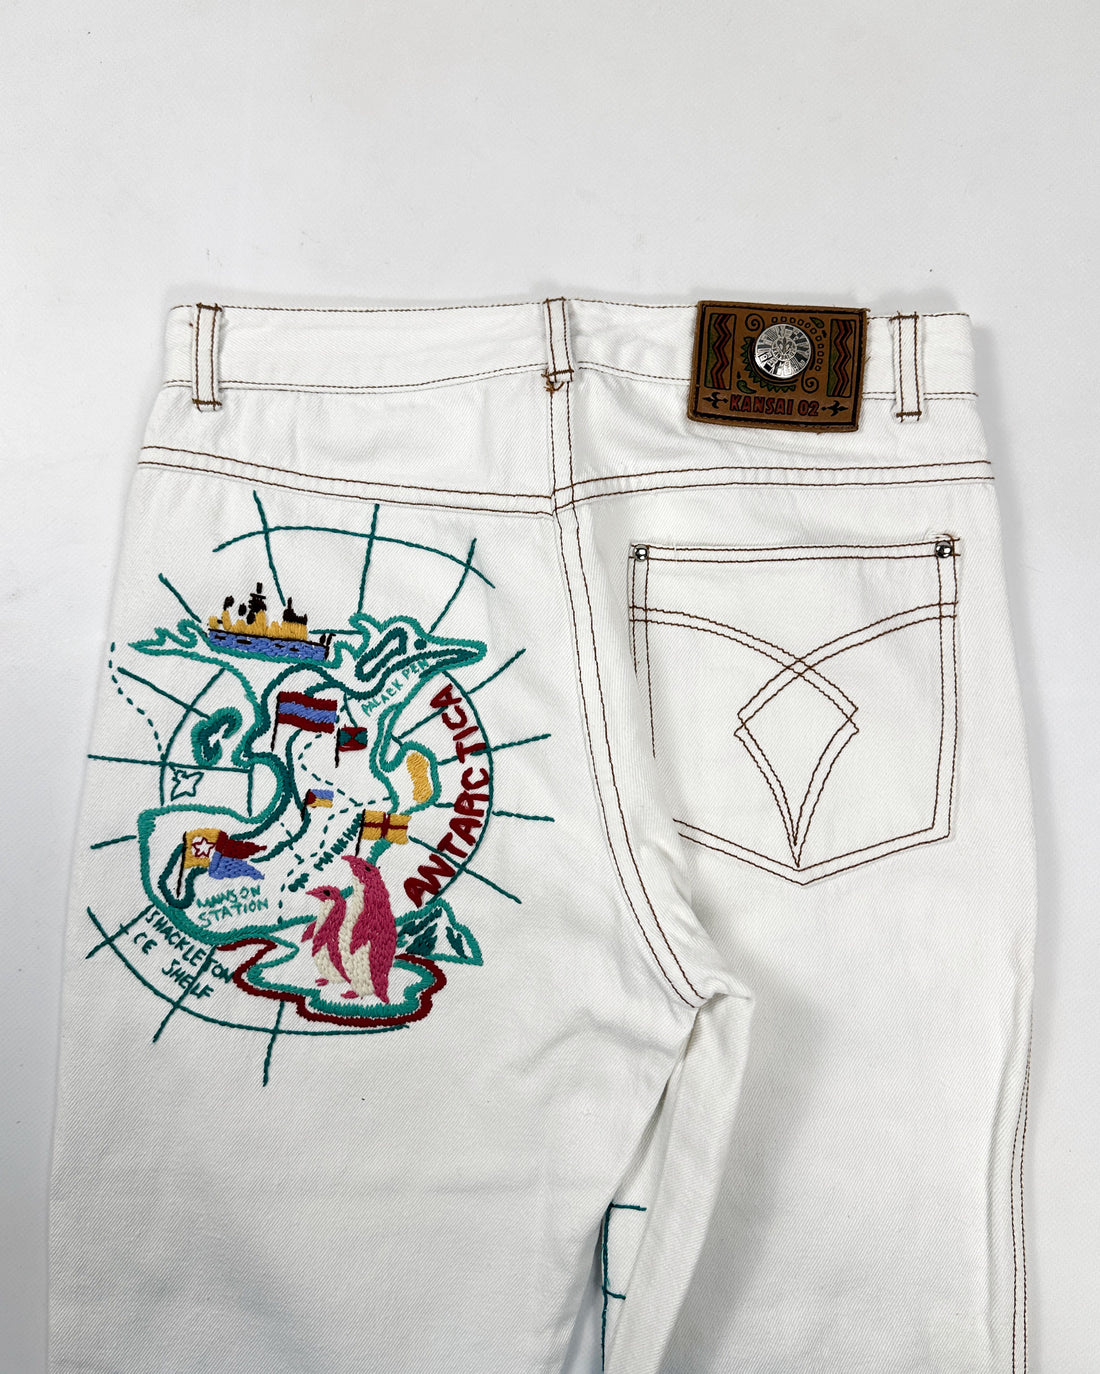 Kansai Yamamoto (O2) Embroidery White Pants 1990's